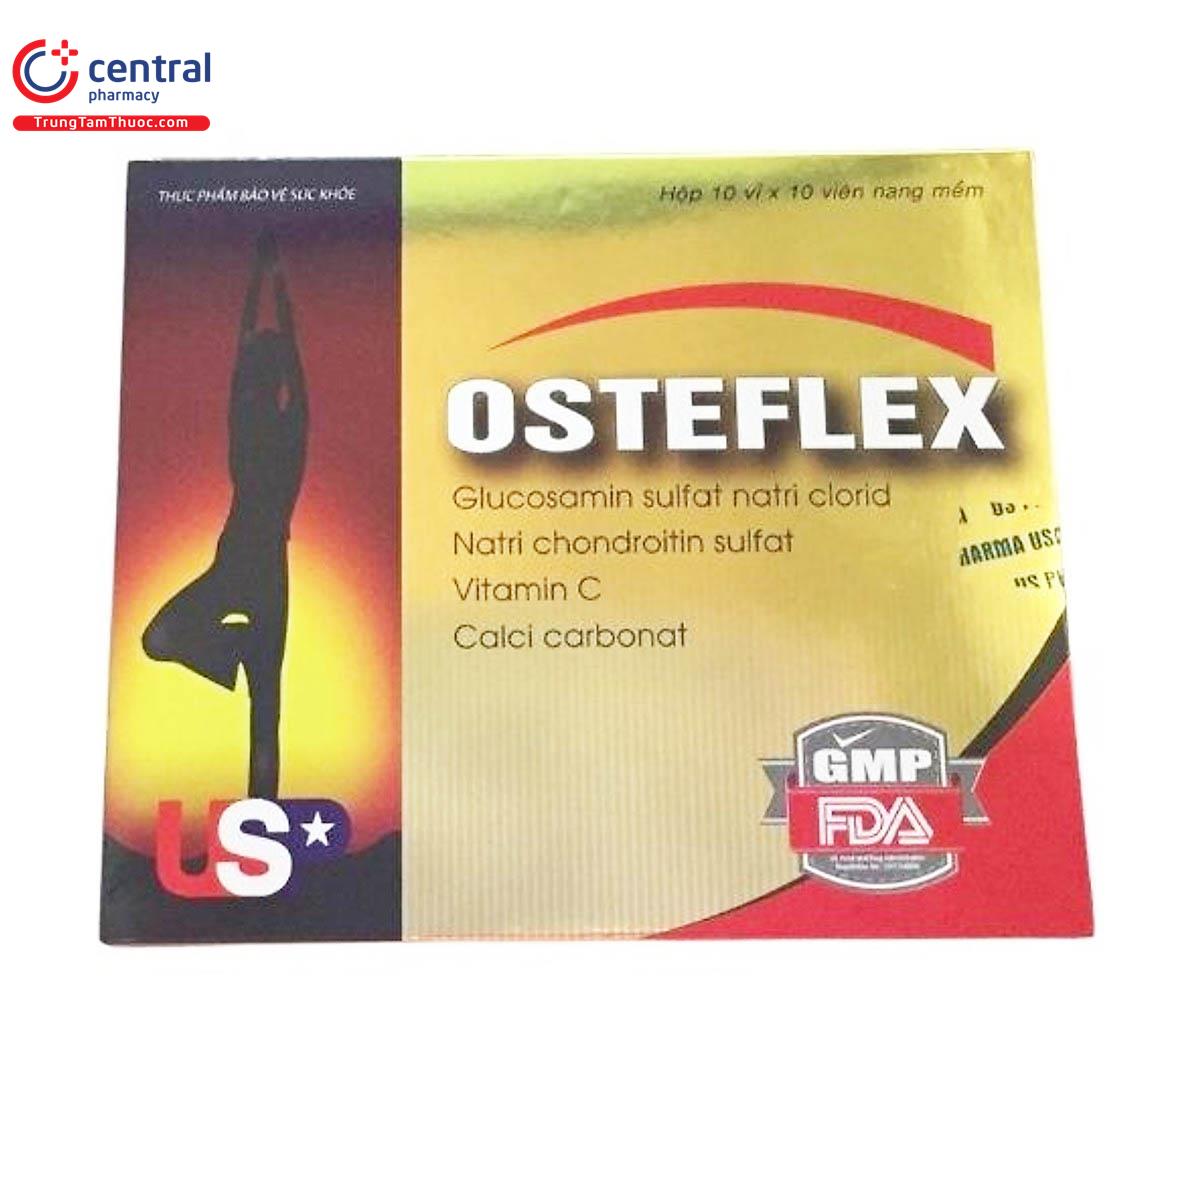 osteflex 2 C1713